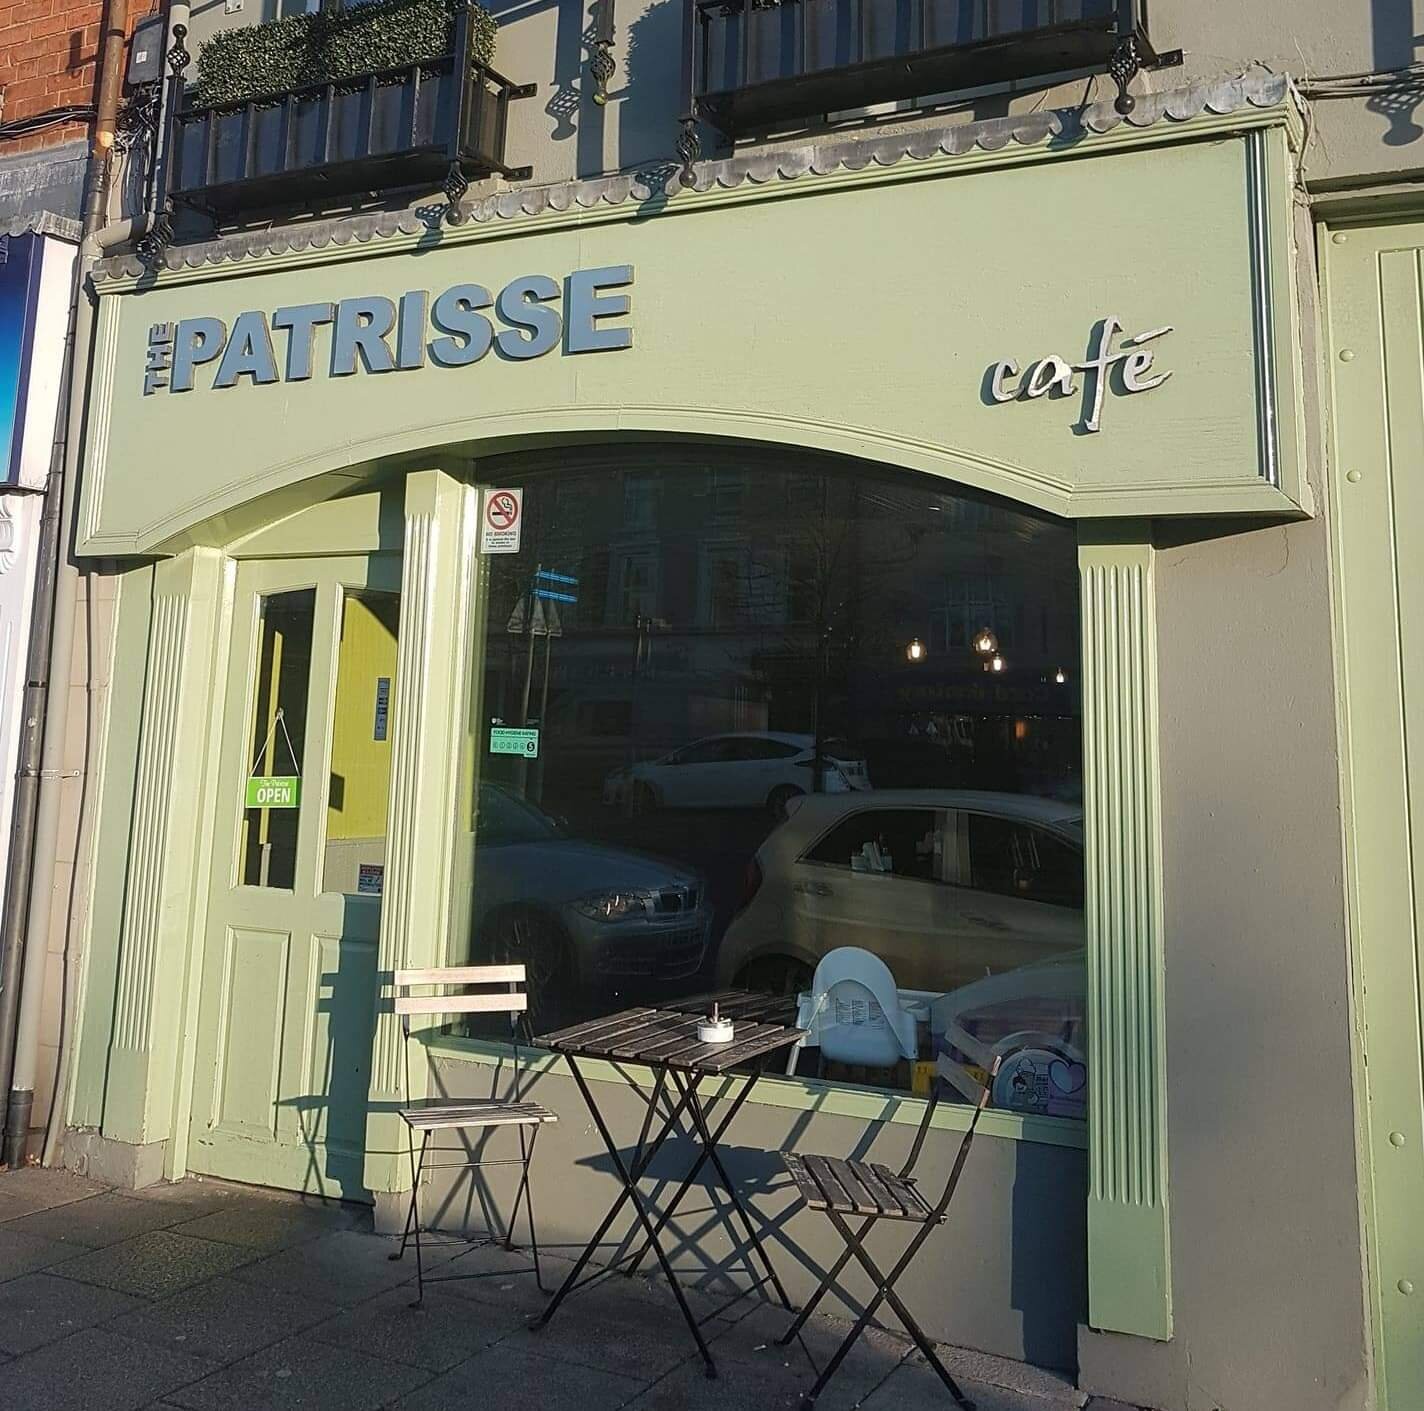 Patrisse Cafe